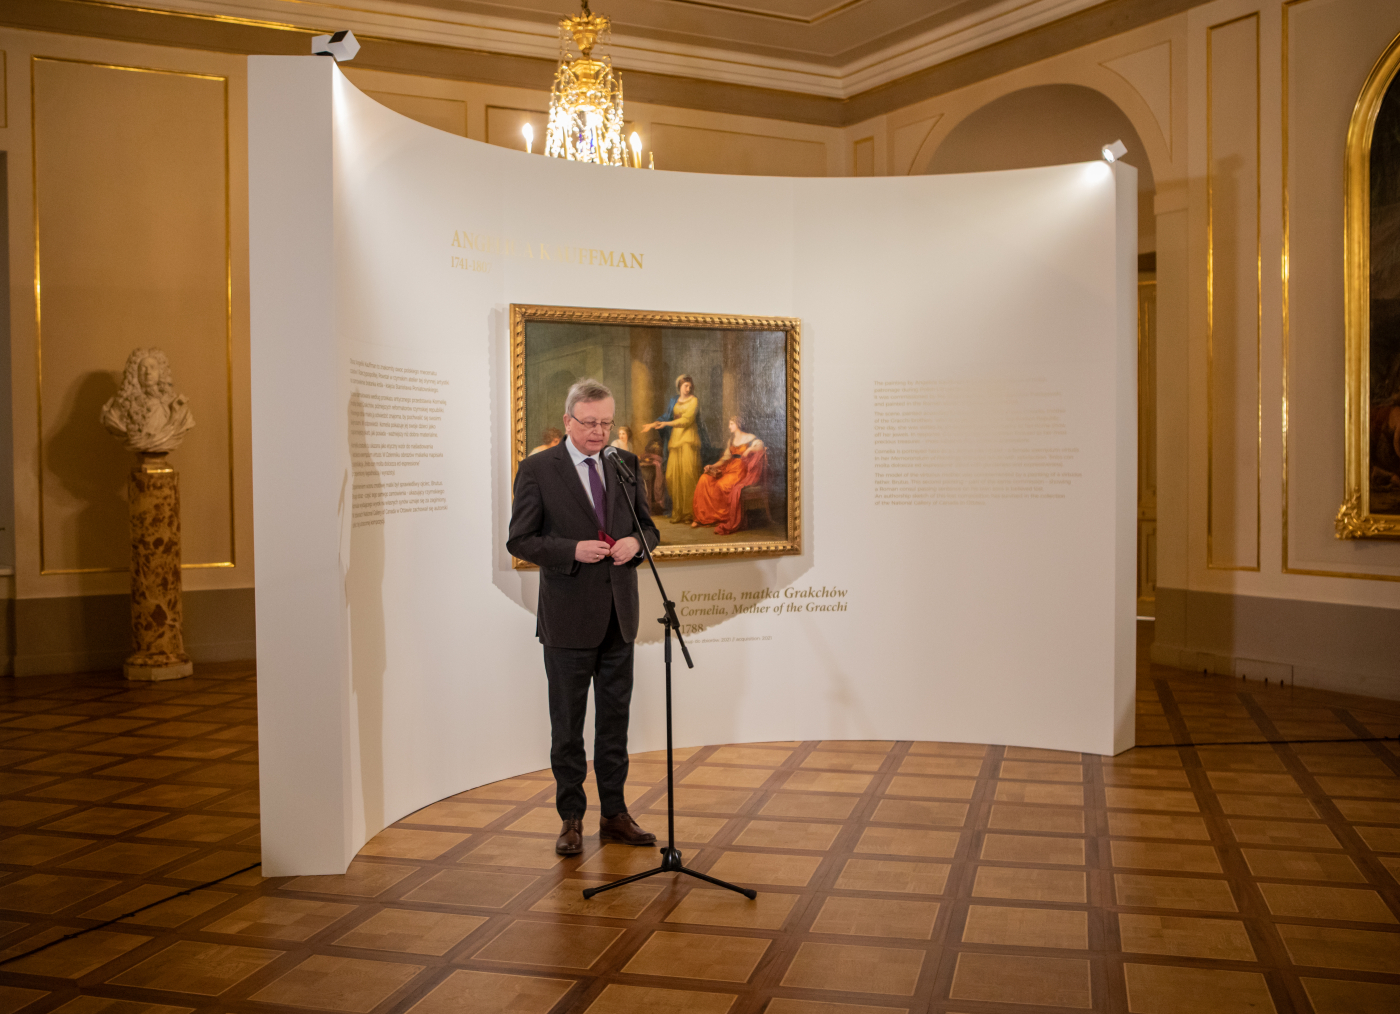 Prof. Wojciech Fałkowski na otwarciu pokazu obrazu Angeliki Kaufffman Kornelia, matka Grakchów